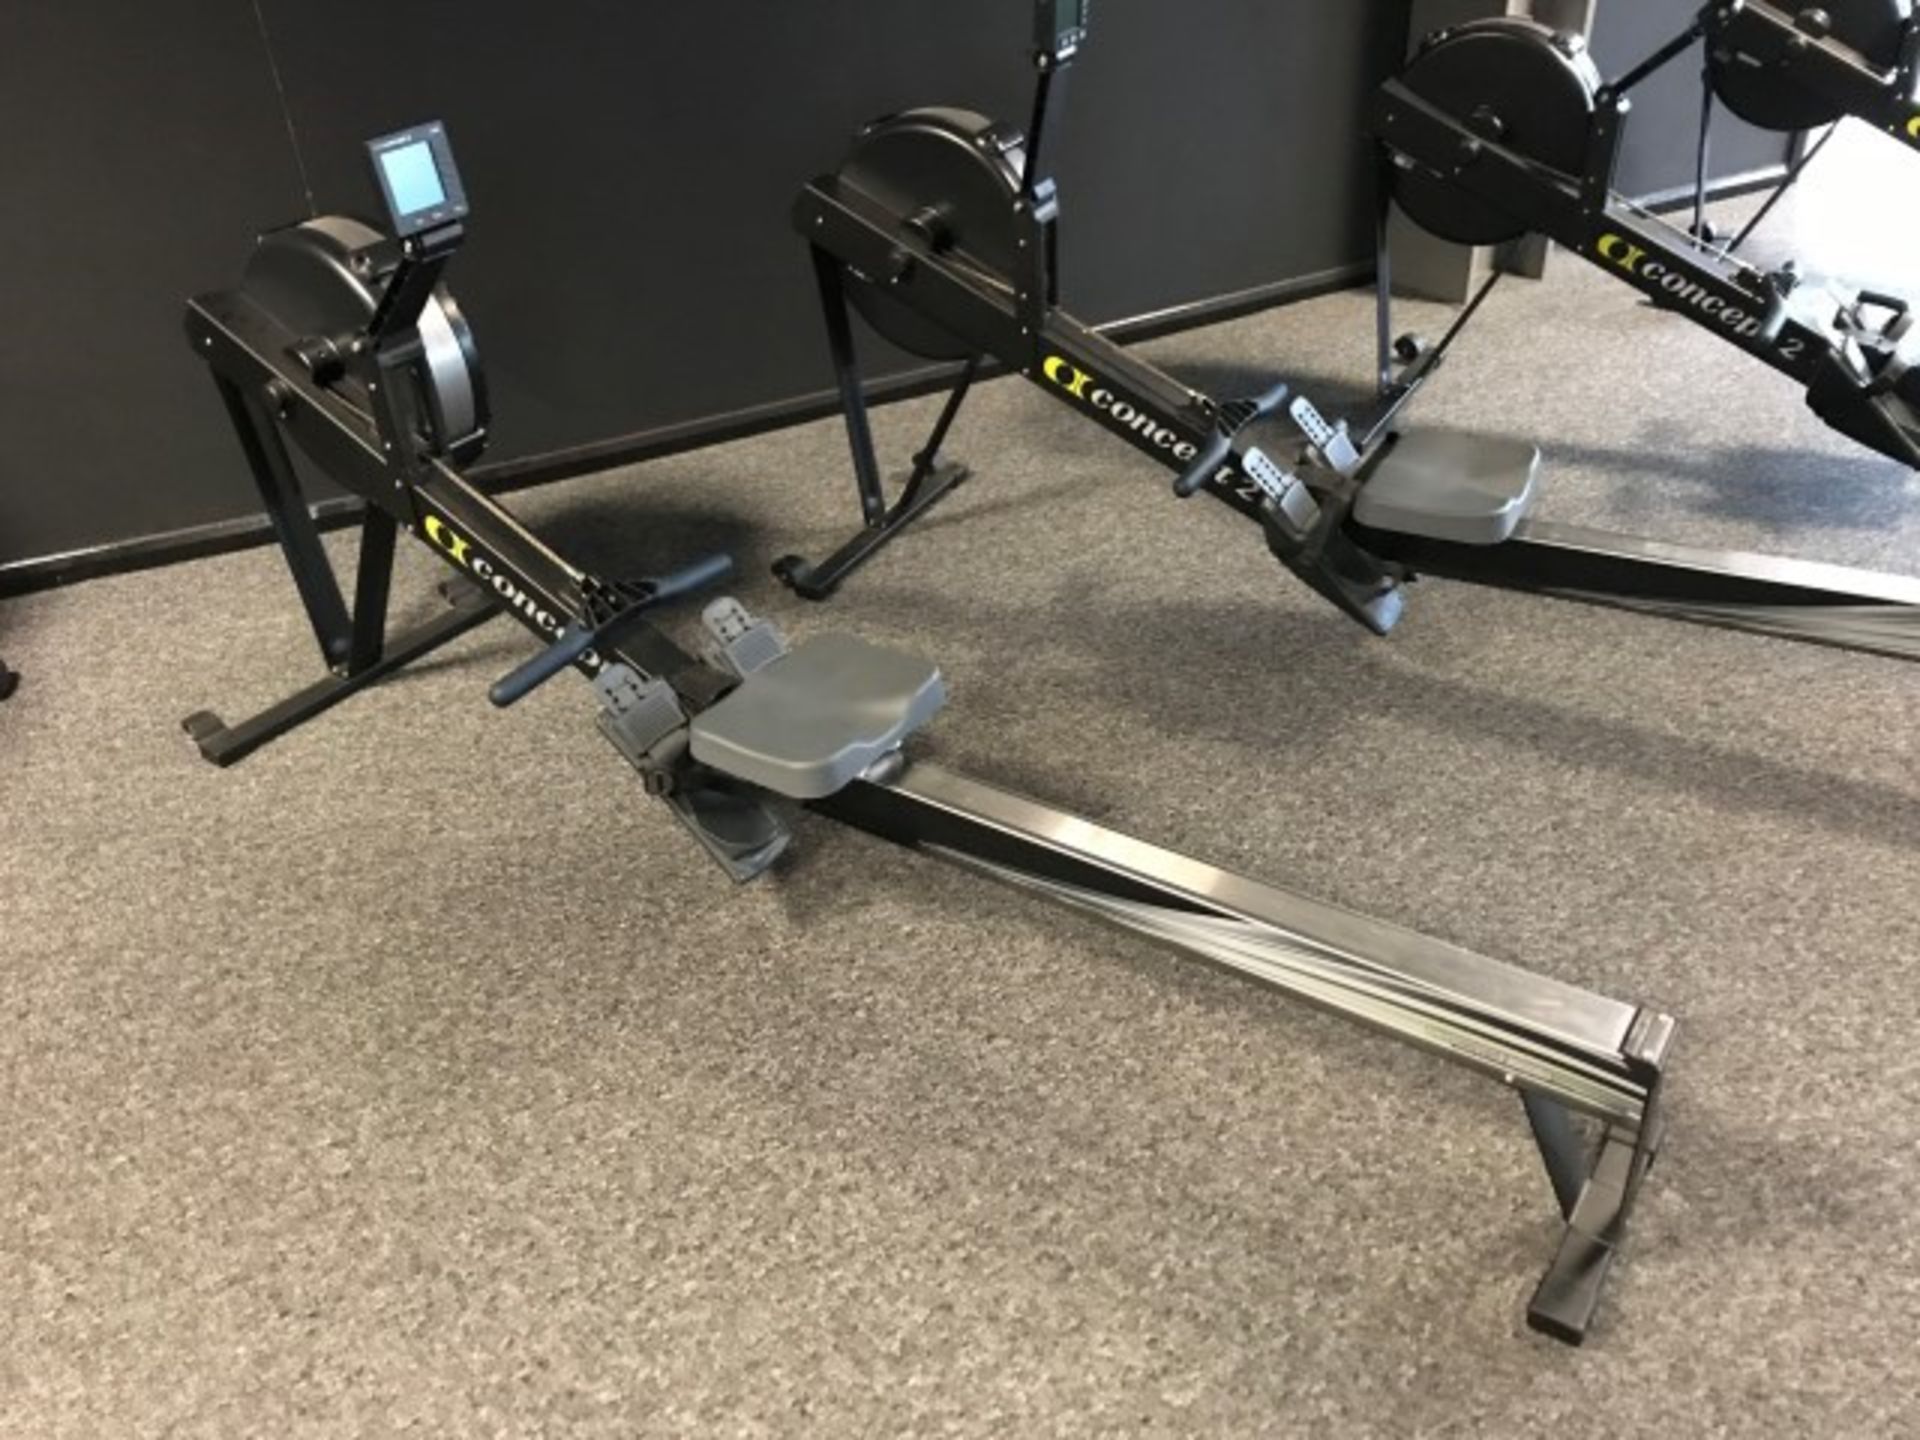 Concept II 2712 Model D rowing machine